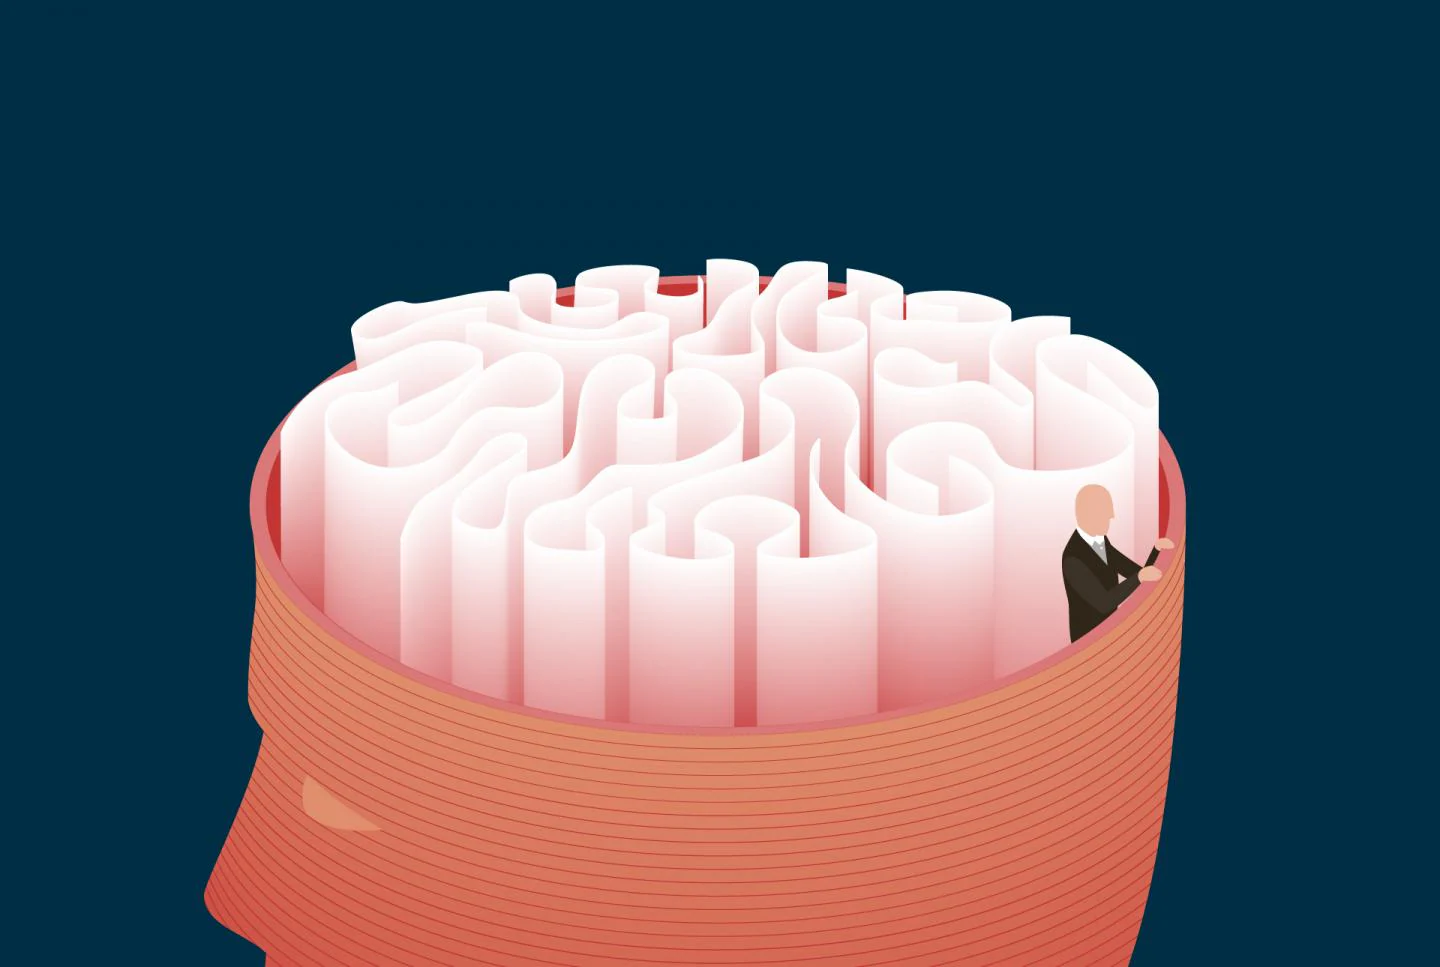 Los neurocientíficos aún no saben cómo surgió la corteza cerebral humana